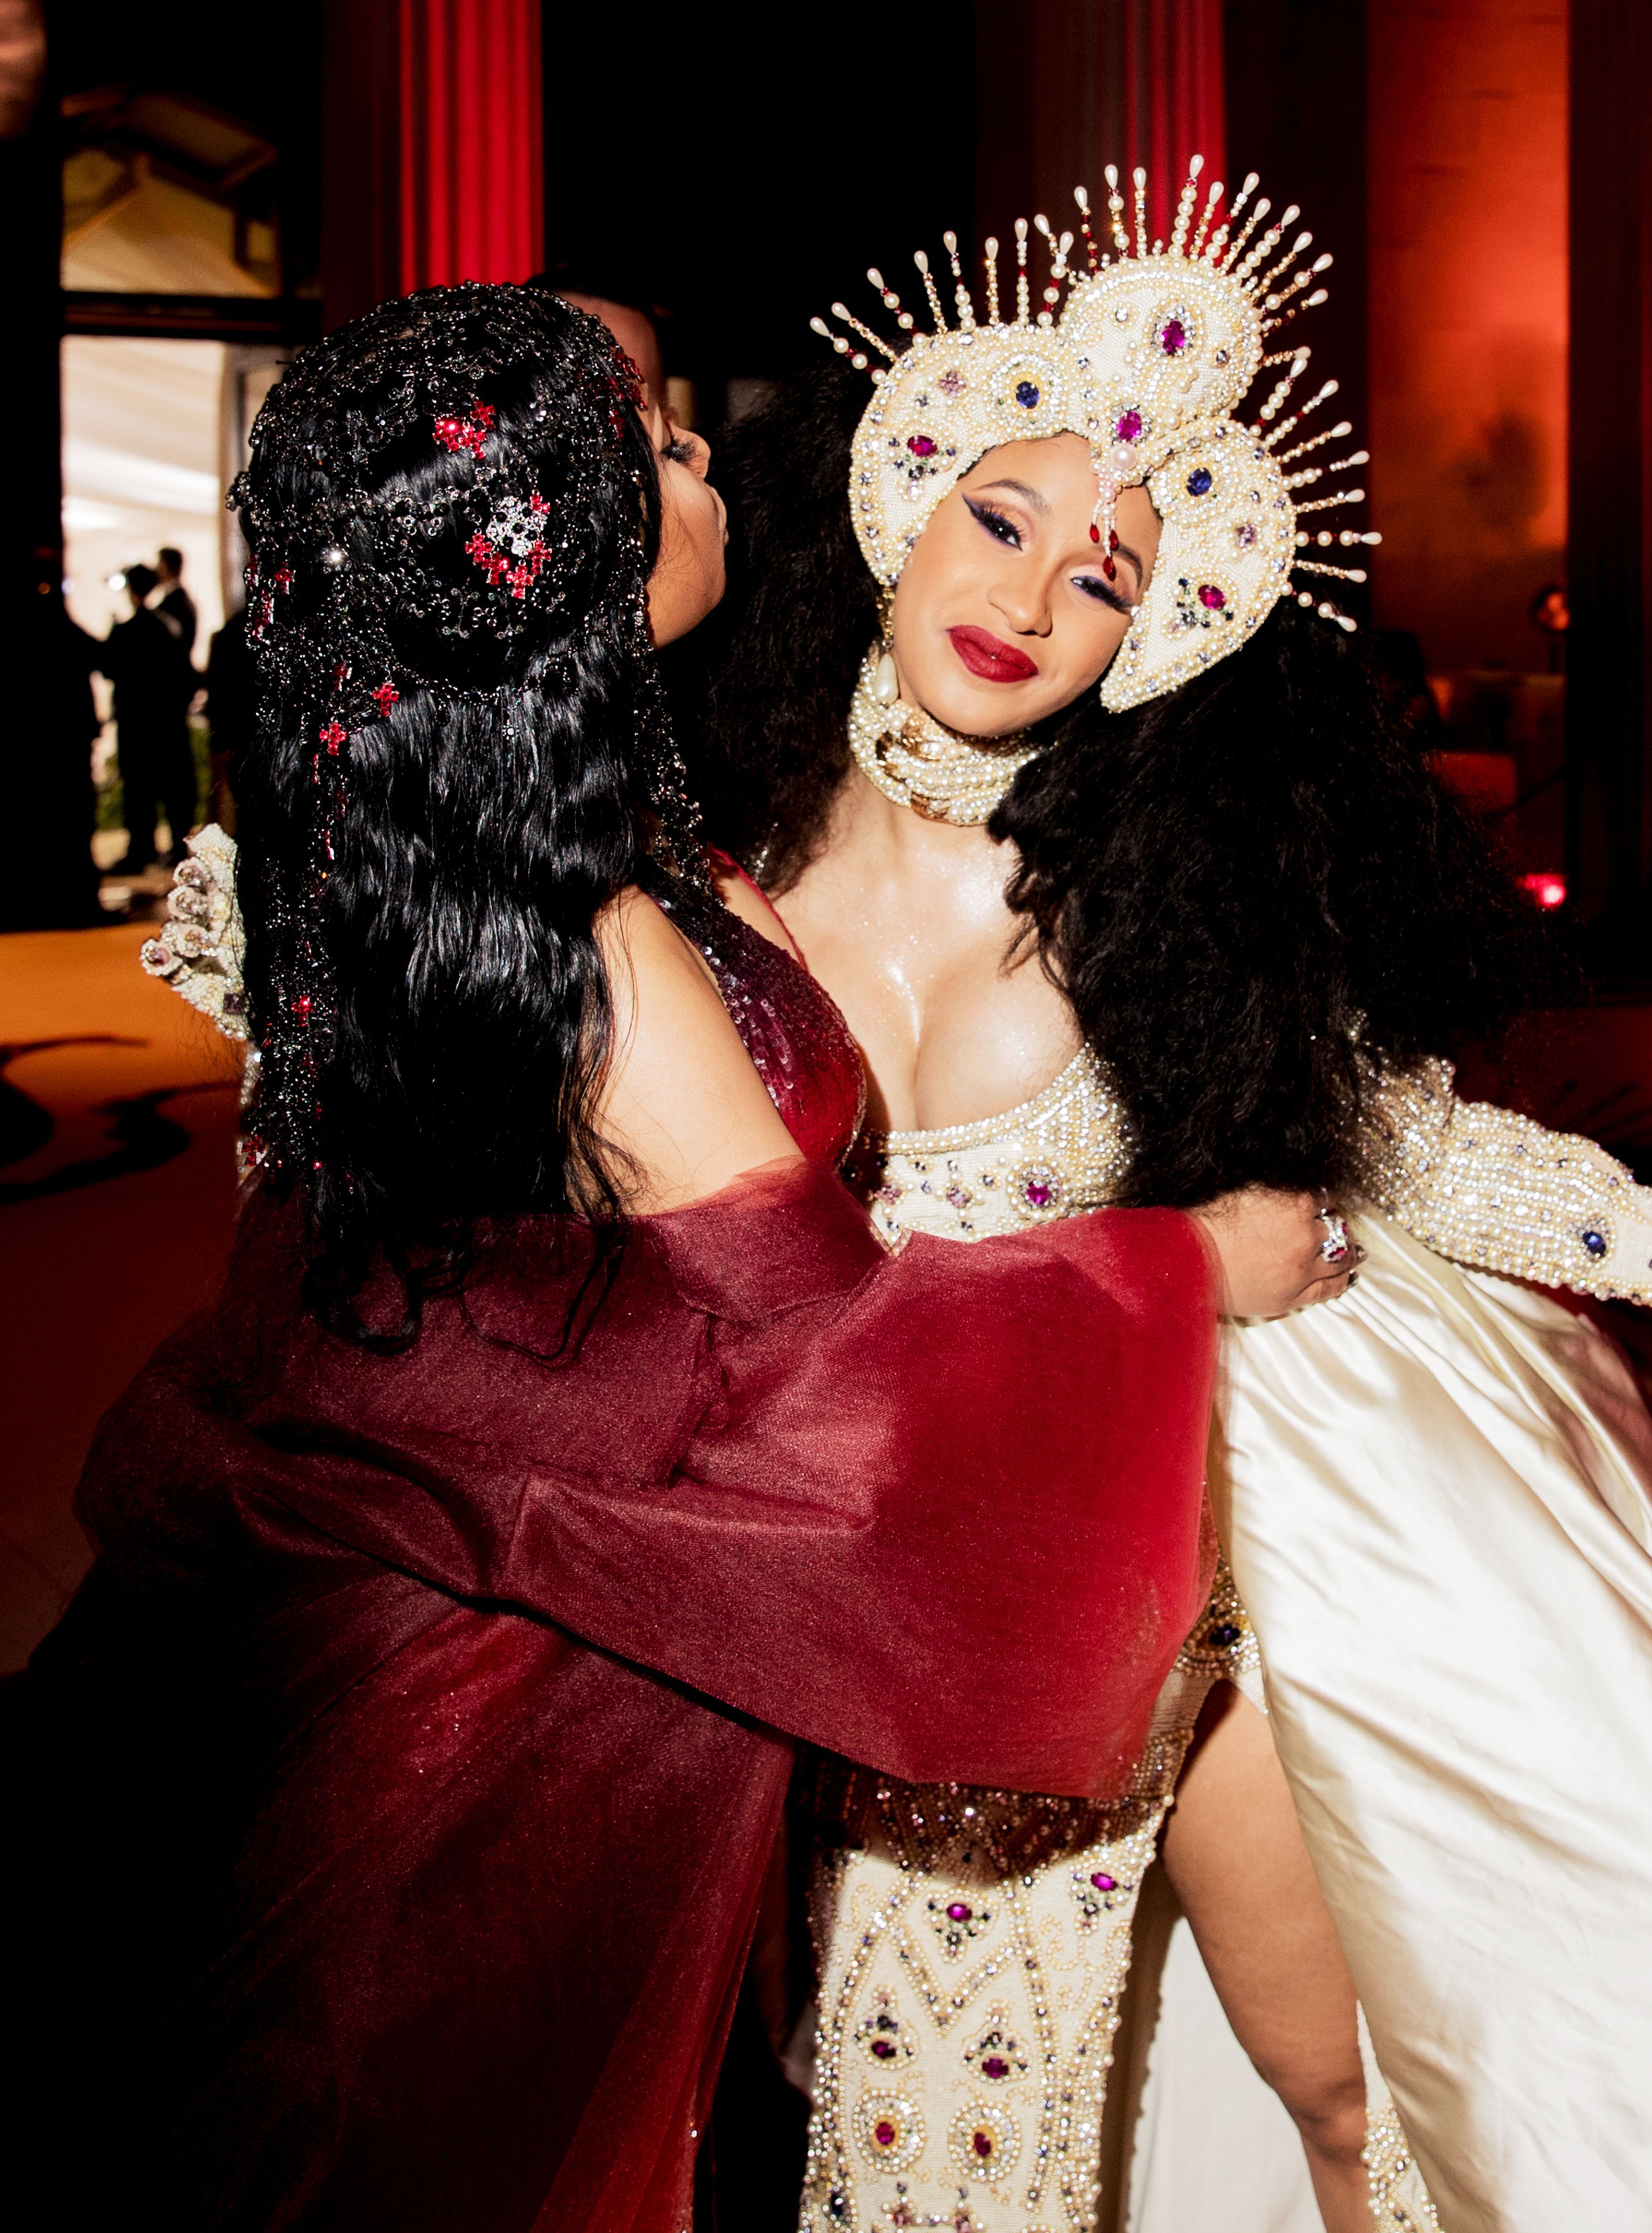 This Is What Cardi B & Nicki Minaj Were Talking About In That Viral Met Gala Photo. Met gala, Galas photo, Cardi b photo